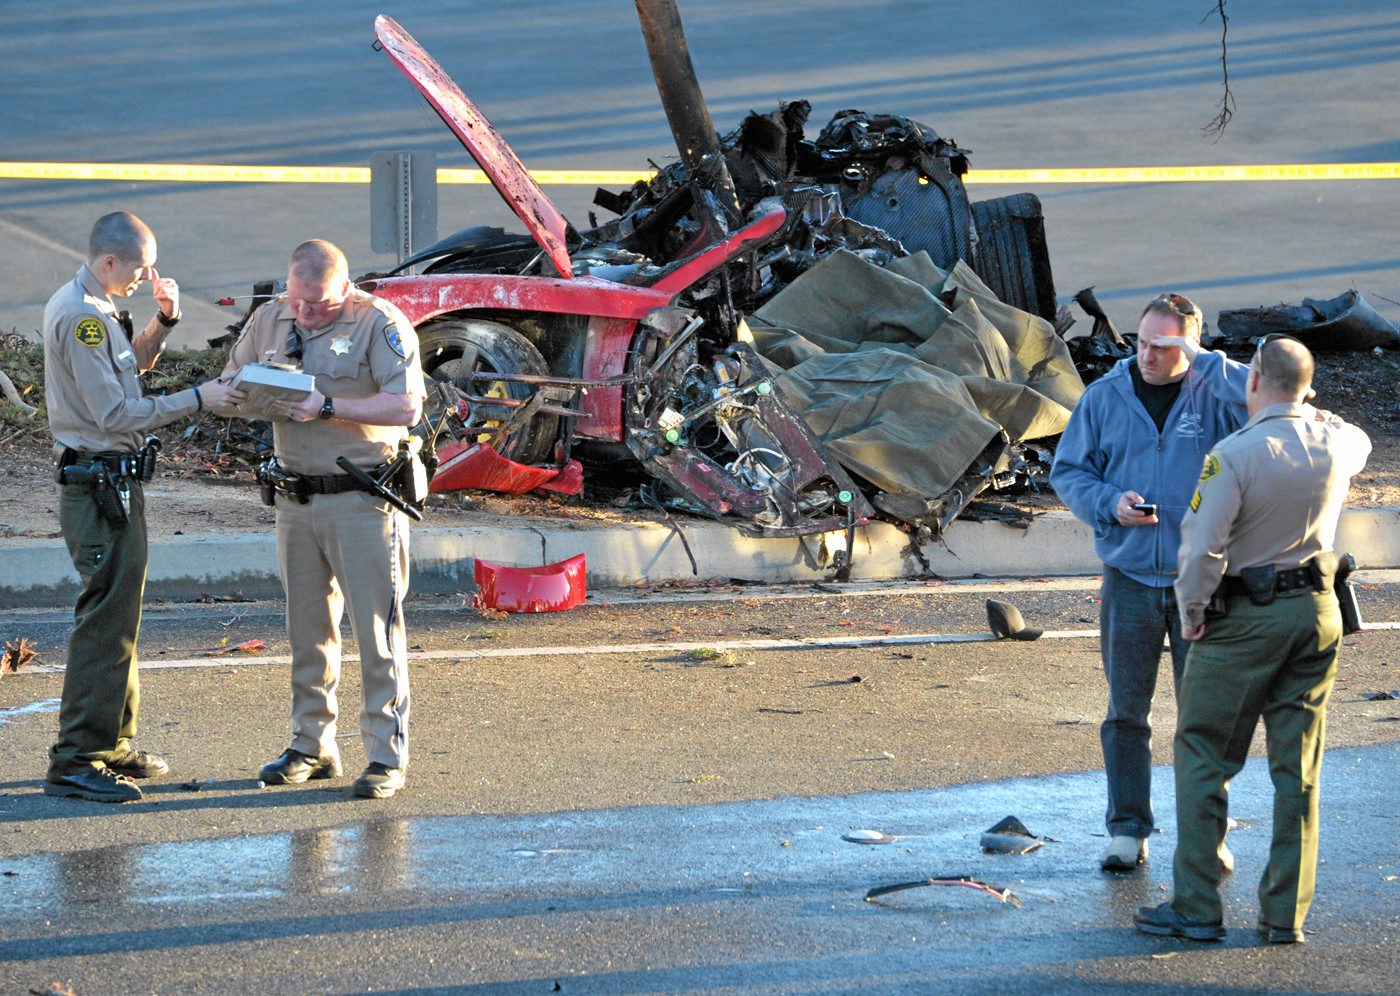 Officials: Speed a factor in Paul Walker’s fatal crash.